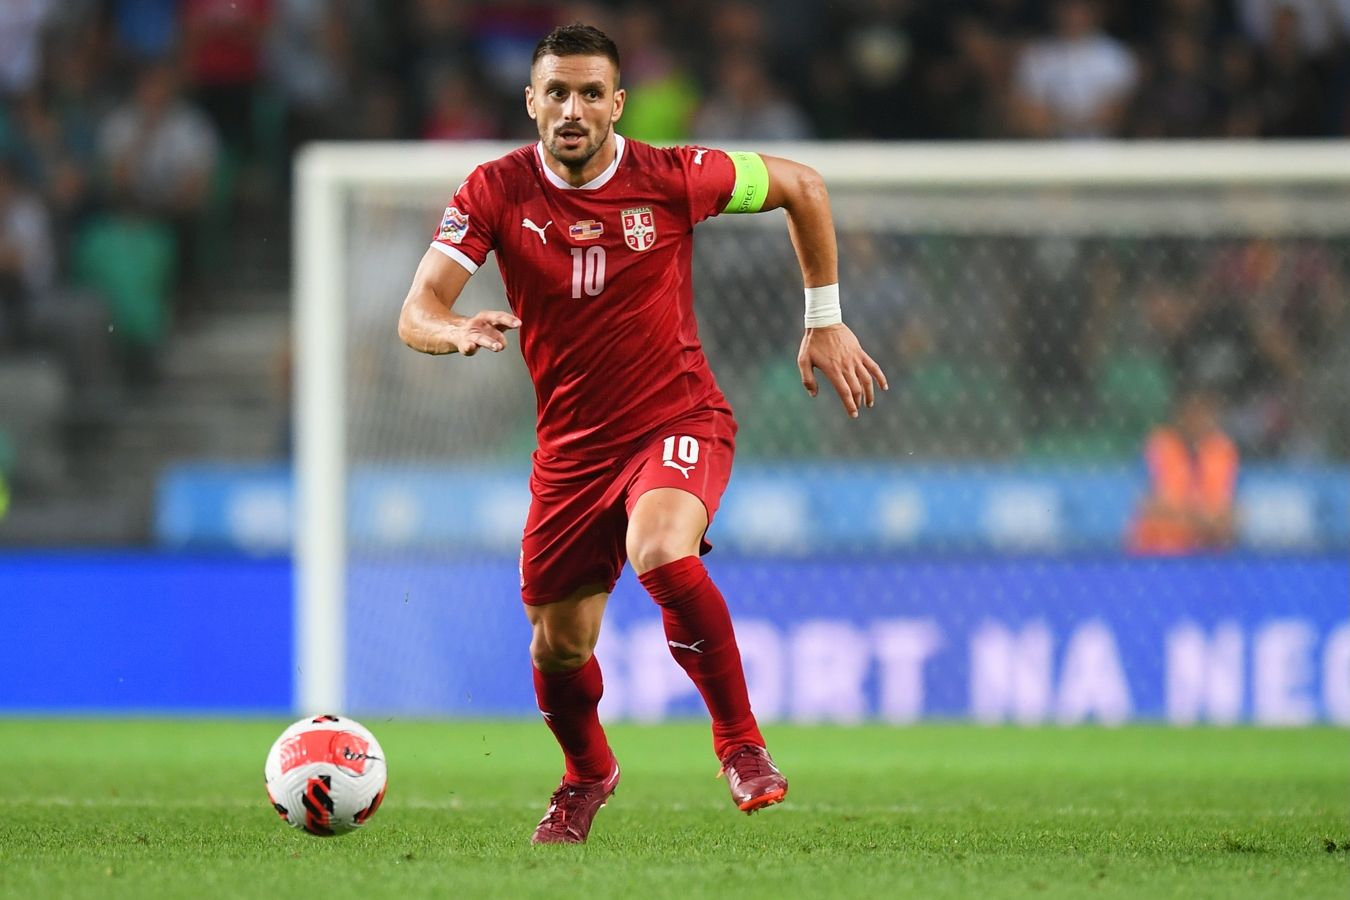 Рекордсмен сборной Сербии по числу матчей Тадич завершил карьеру в национальной команде